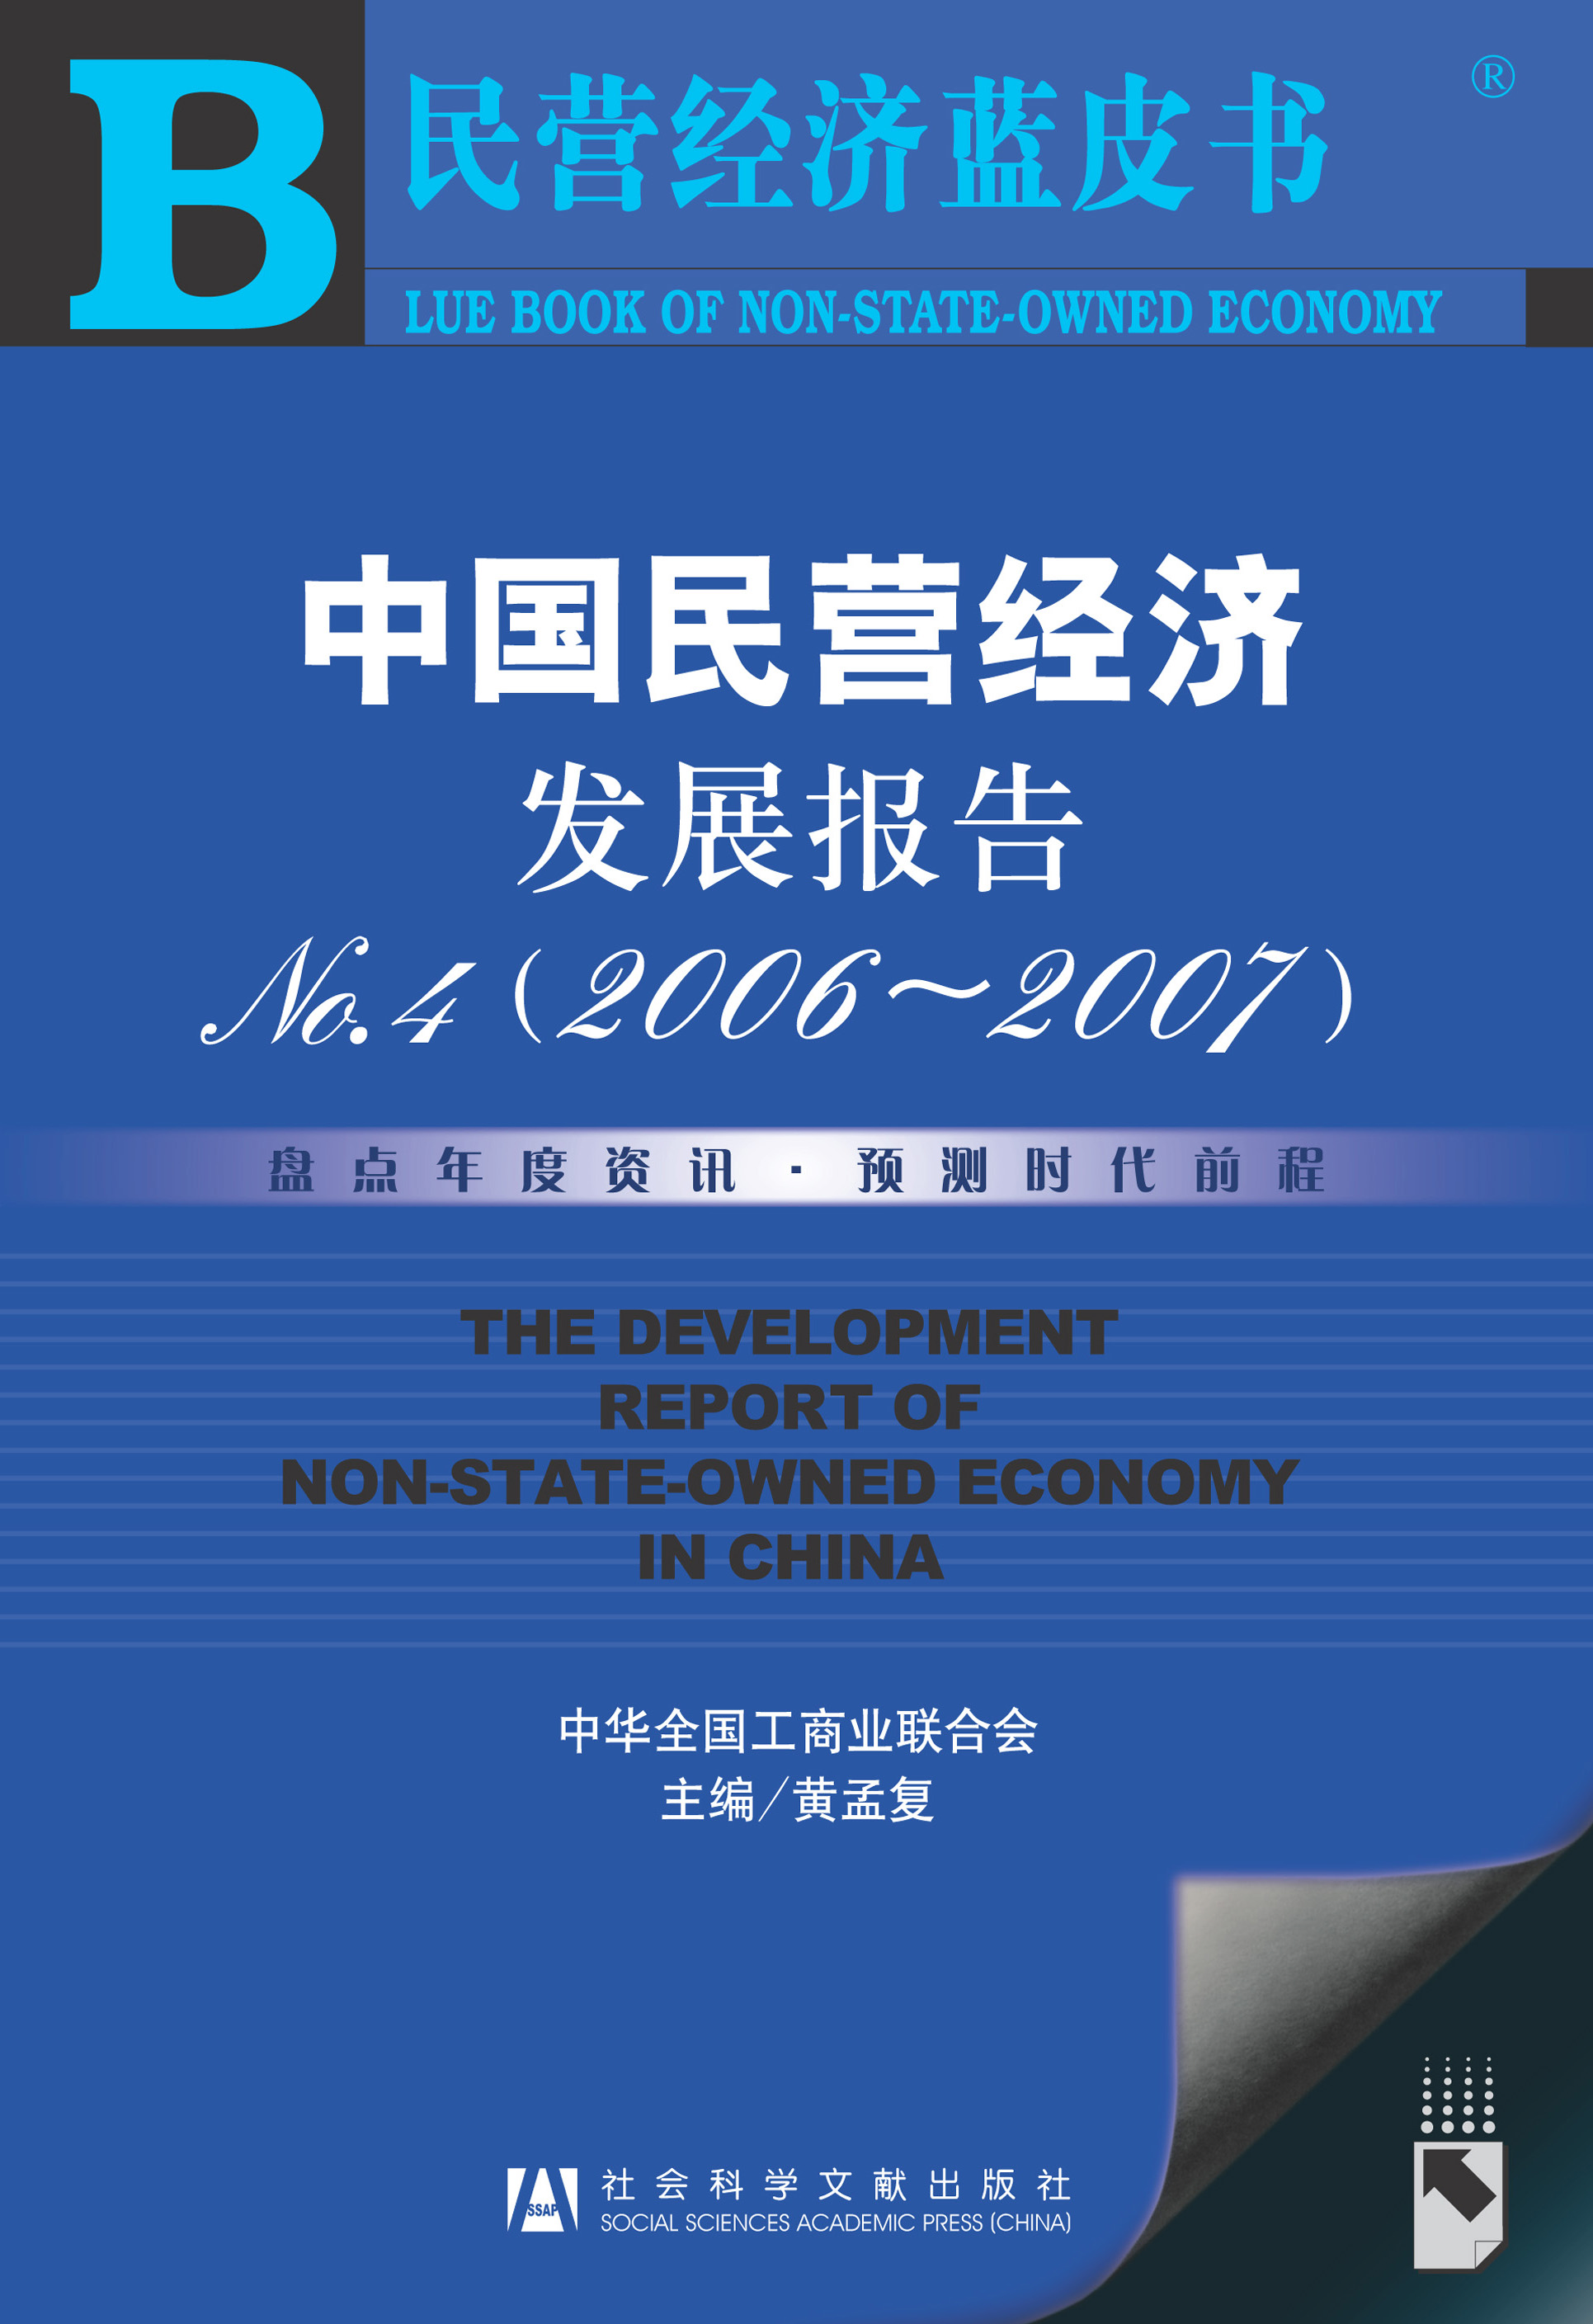 中国民营经济发展报告ＮＯ．4（2006-2007）